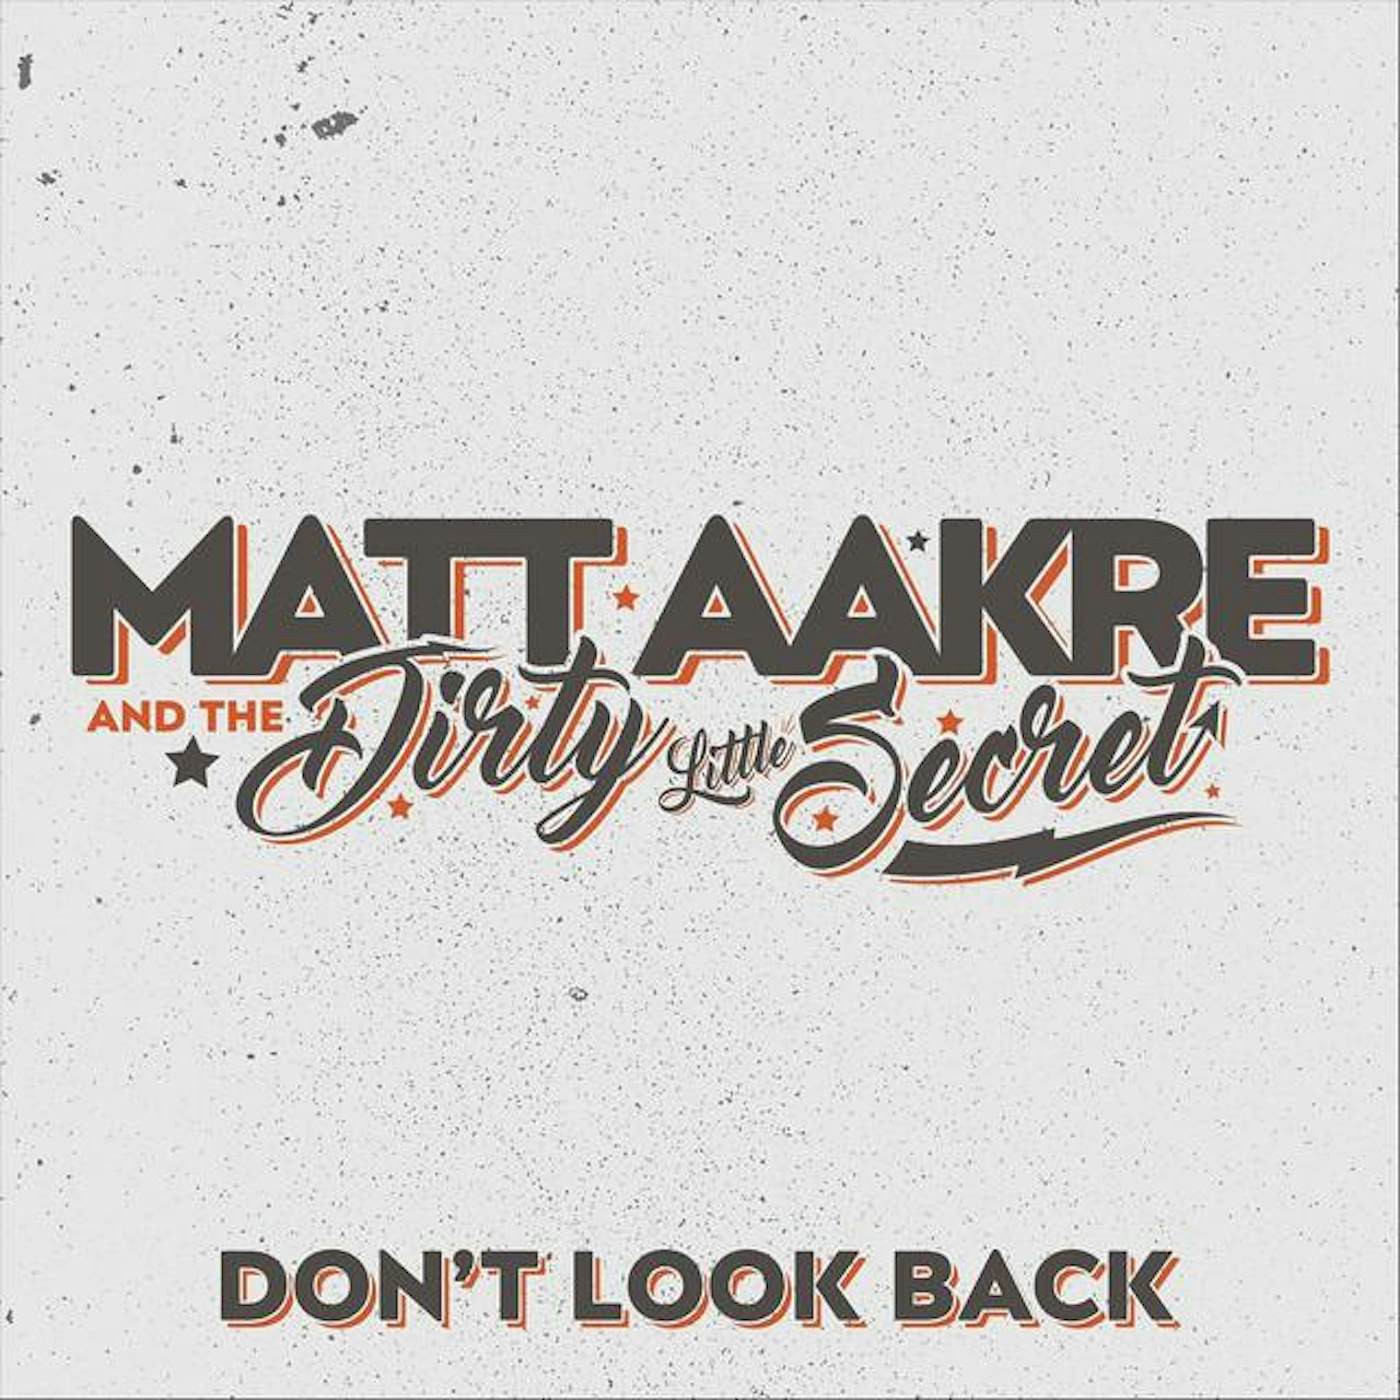 Matt Aakre and the Dirty Little Secret